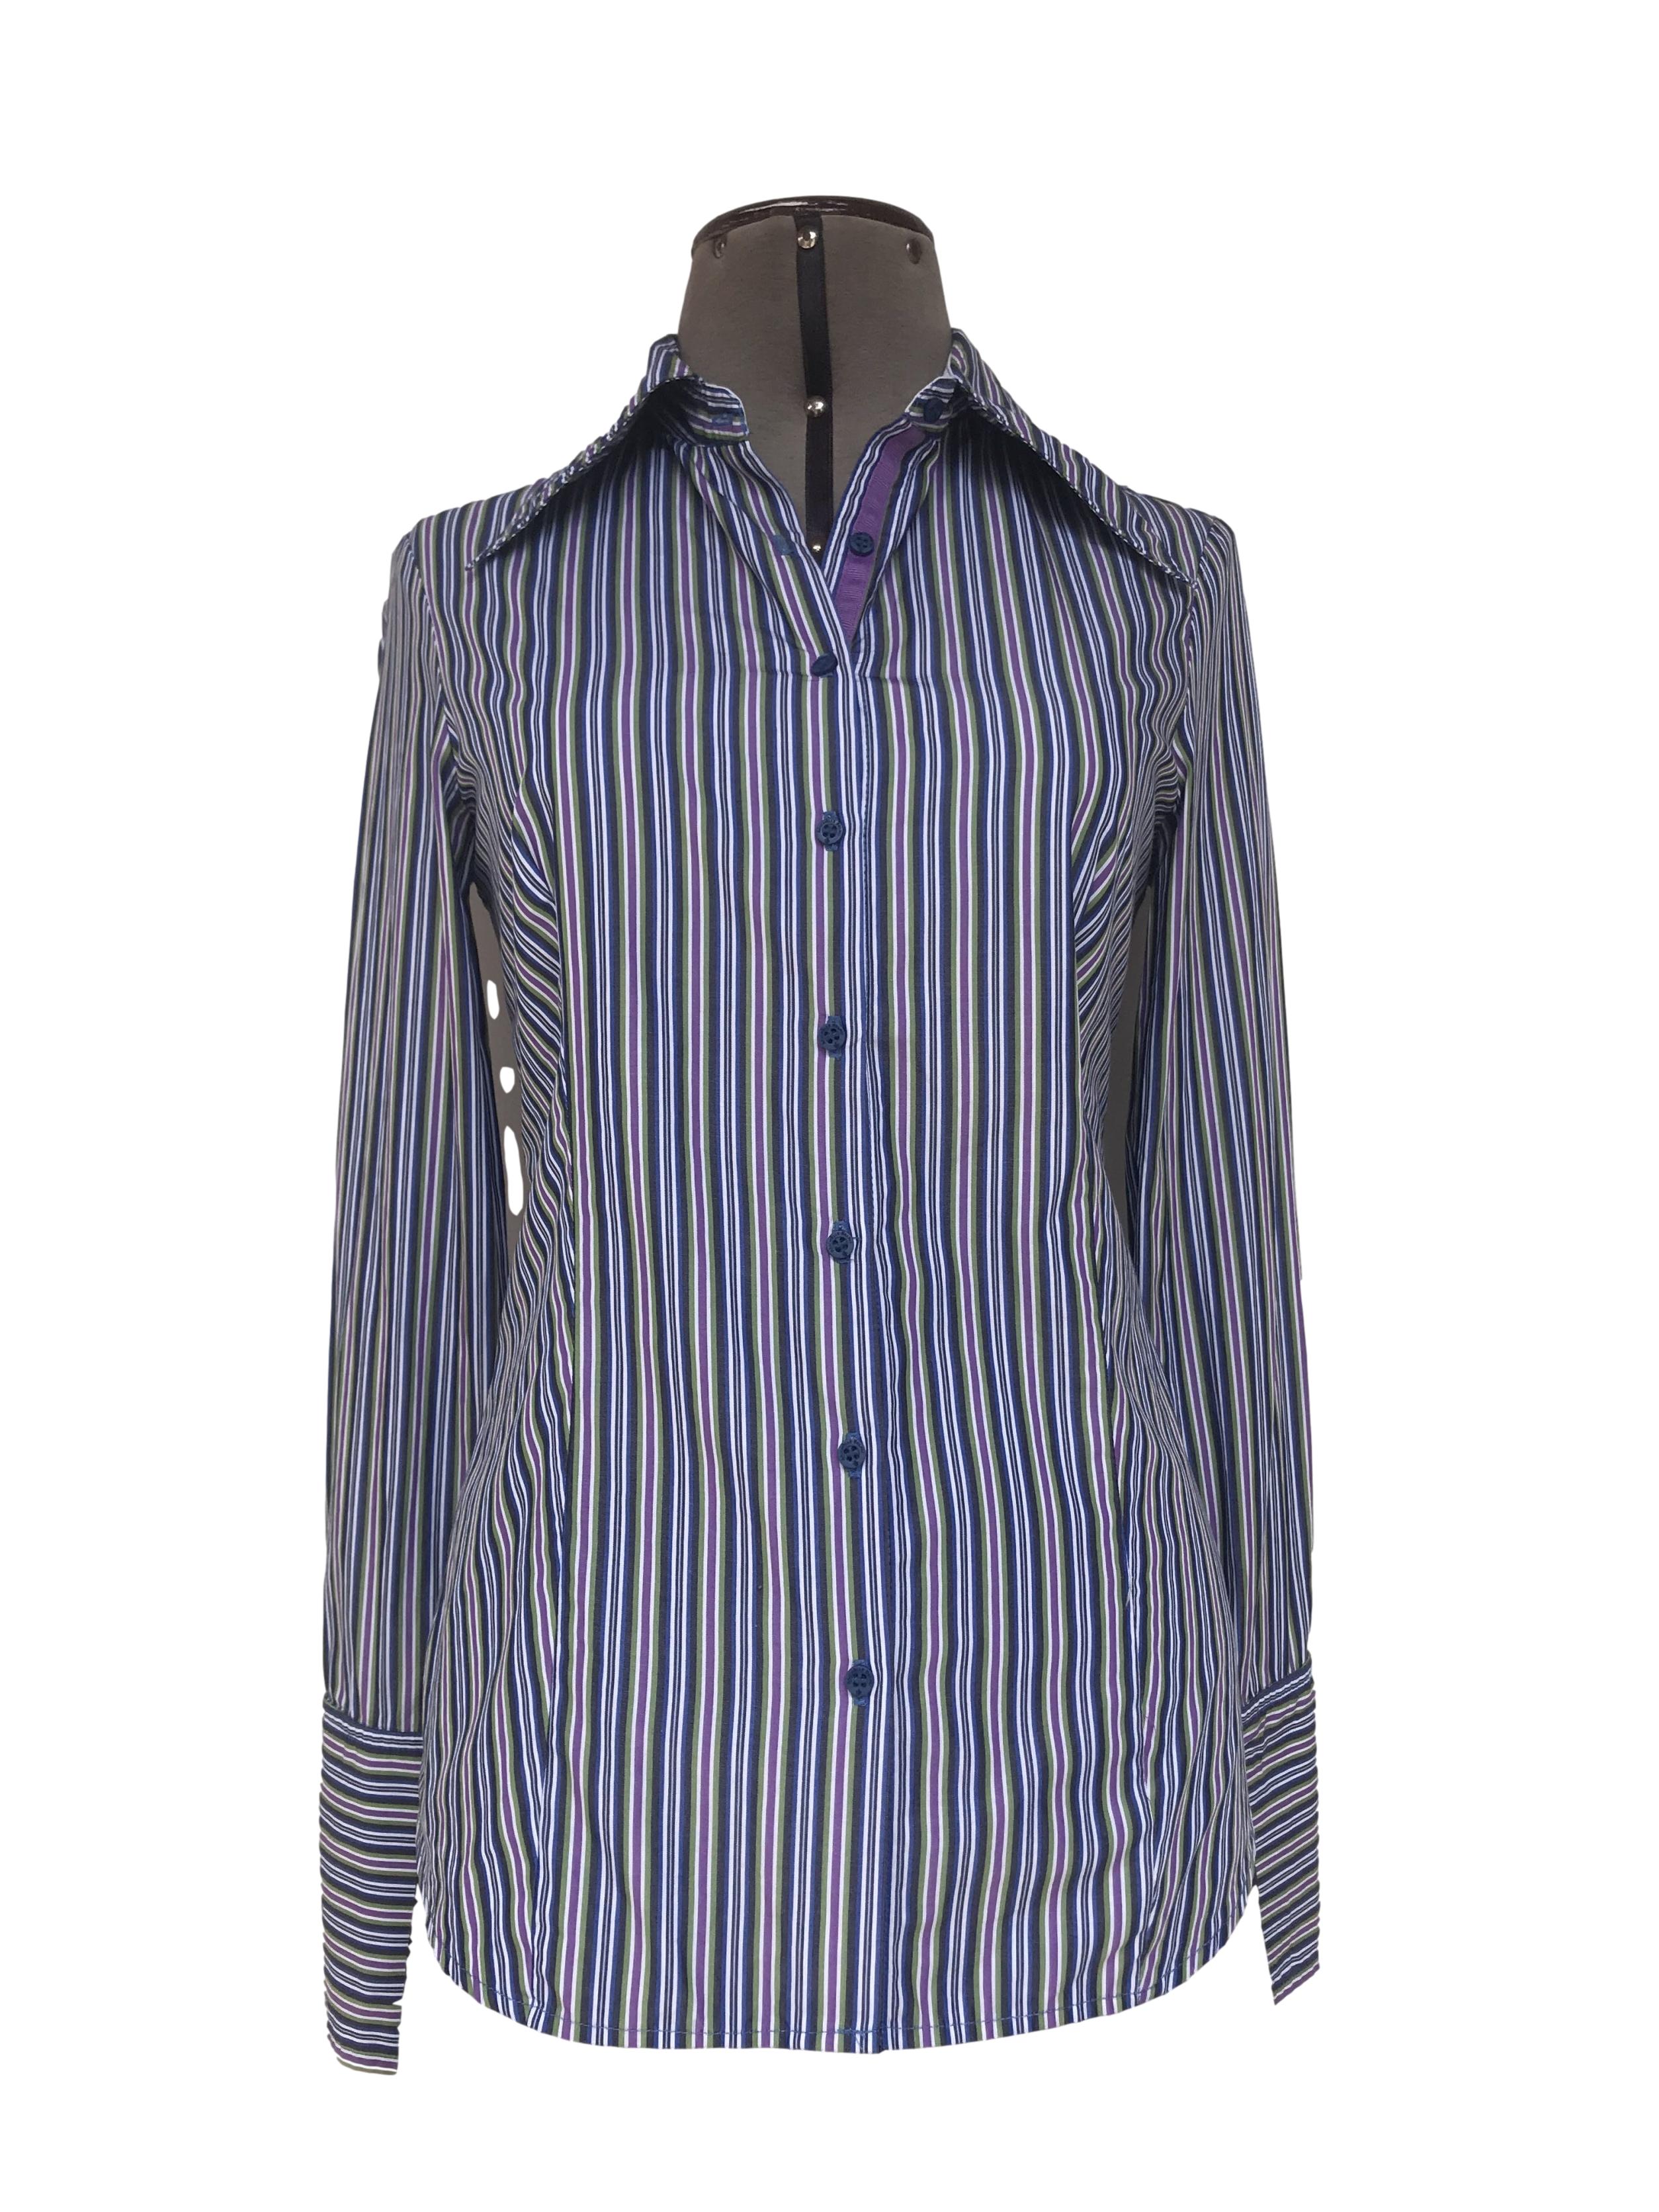 Blusa Michelle Belau a rayas en tonos azules, morados y blancos, 75% algodón, fila de botones azules y puño ancho. Linda!
Tallo S